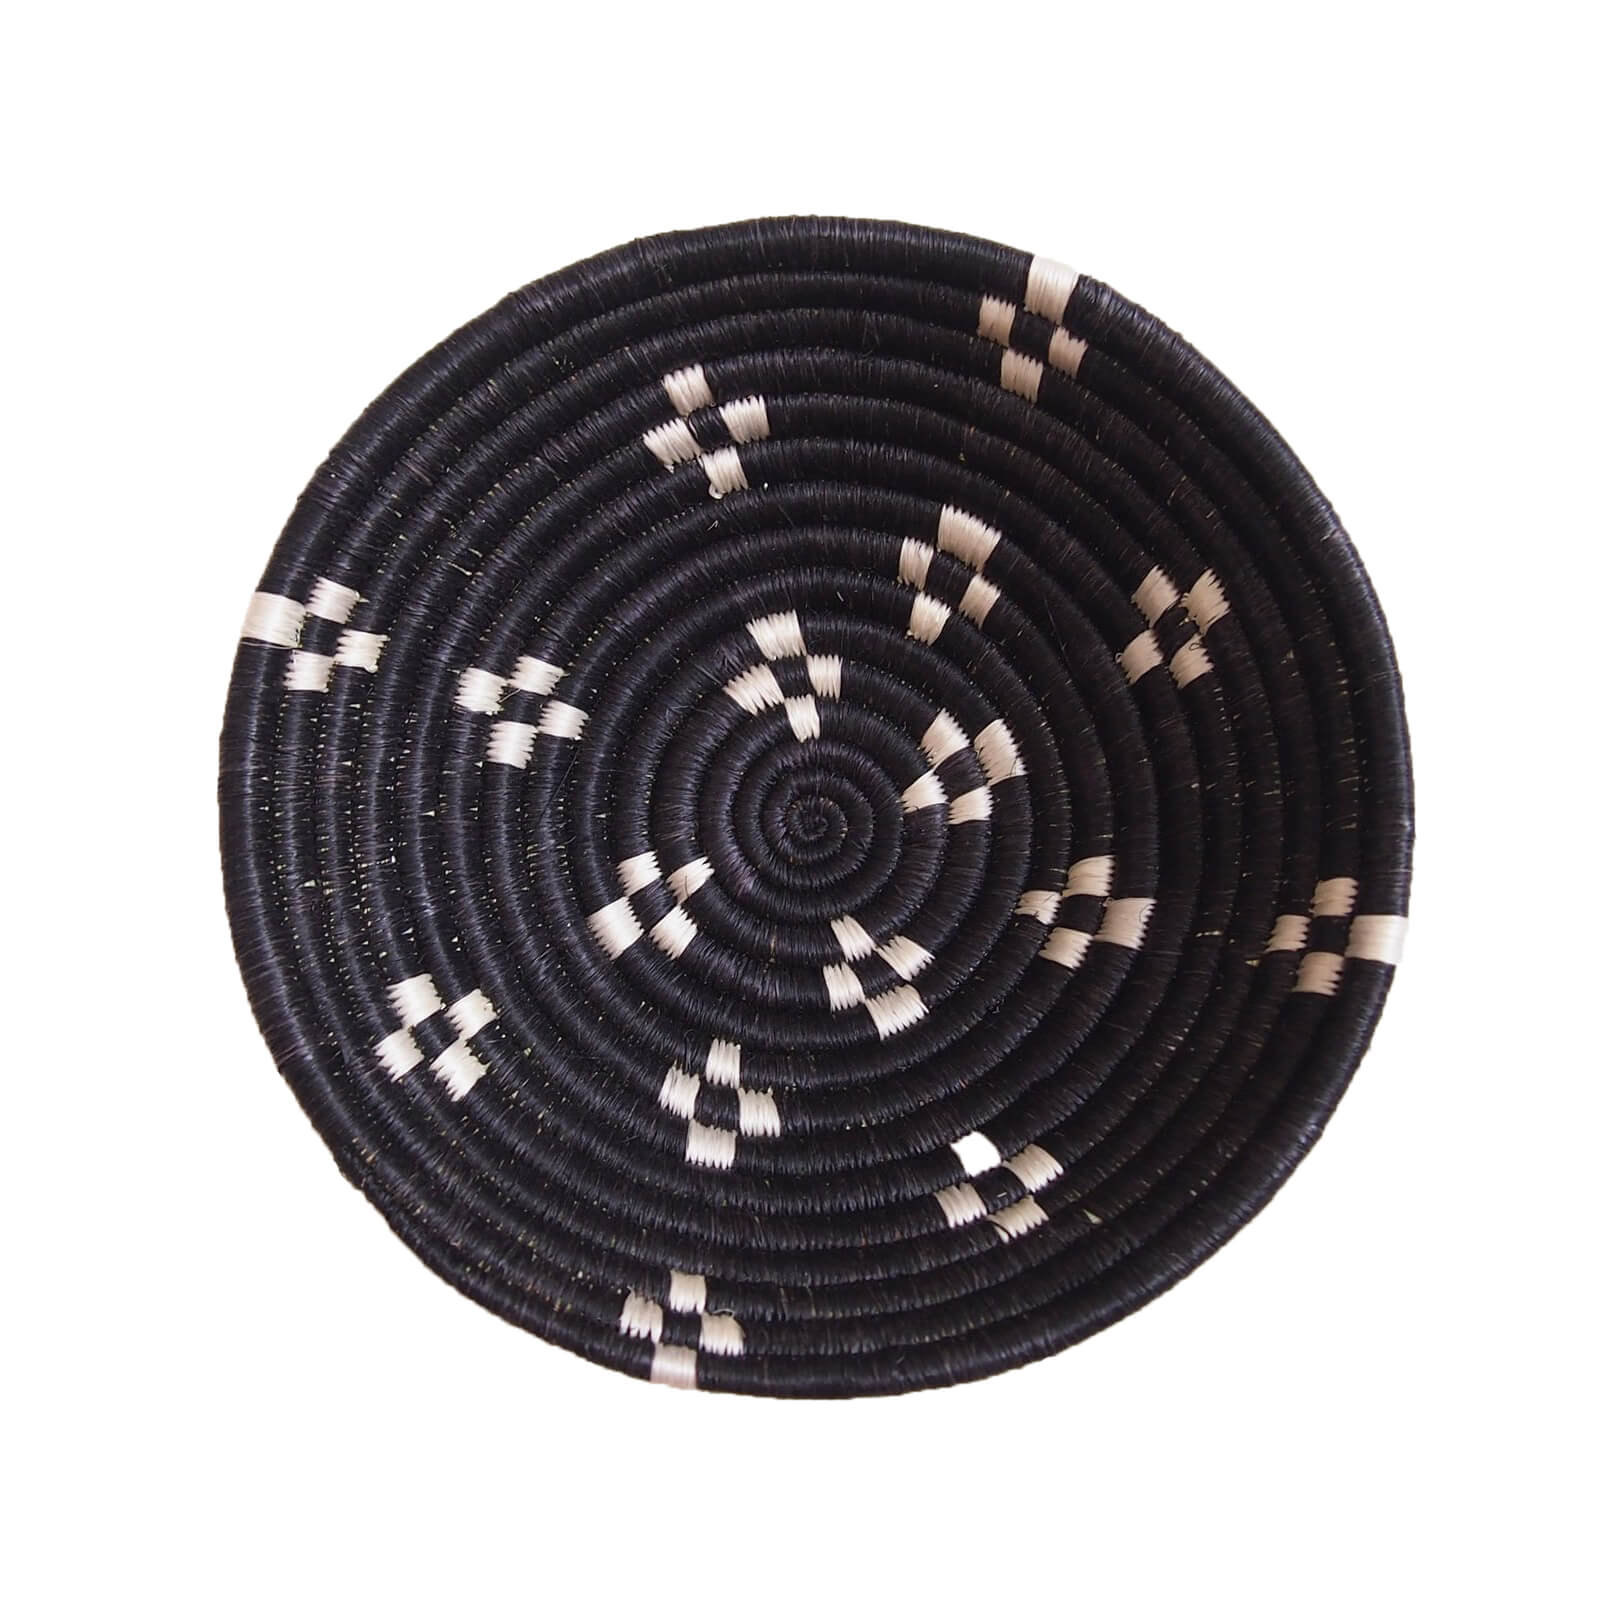 Hand Woven Munazi Basket - Black and White, Small